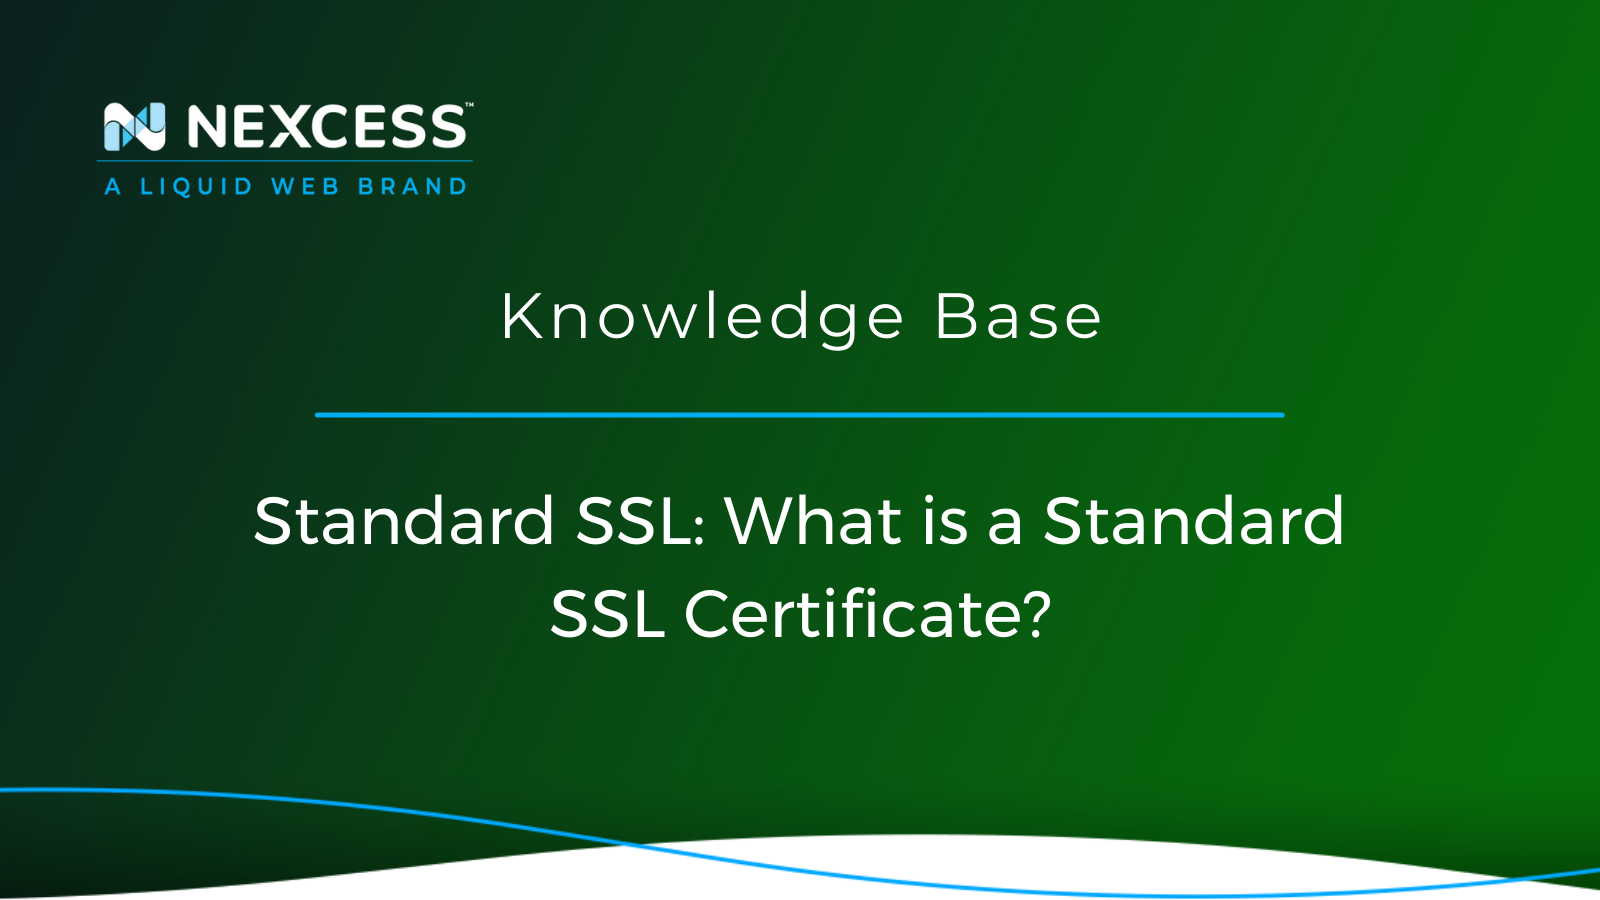 Standard SSL: What is a Standard SSL Certificate?